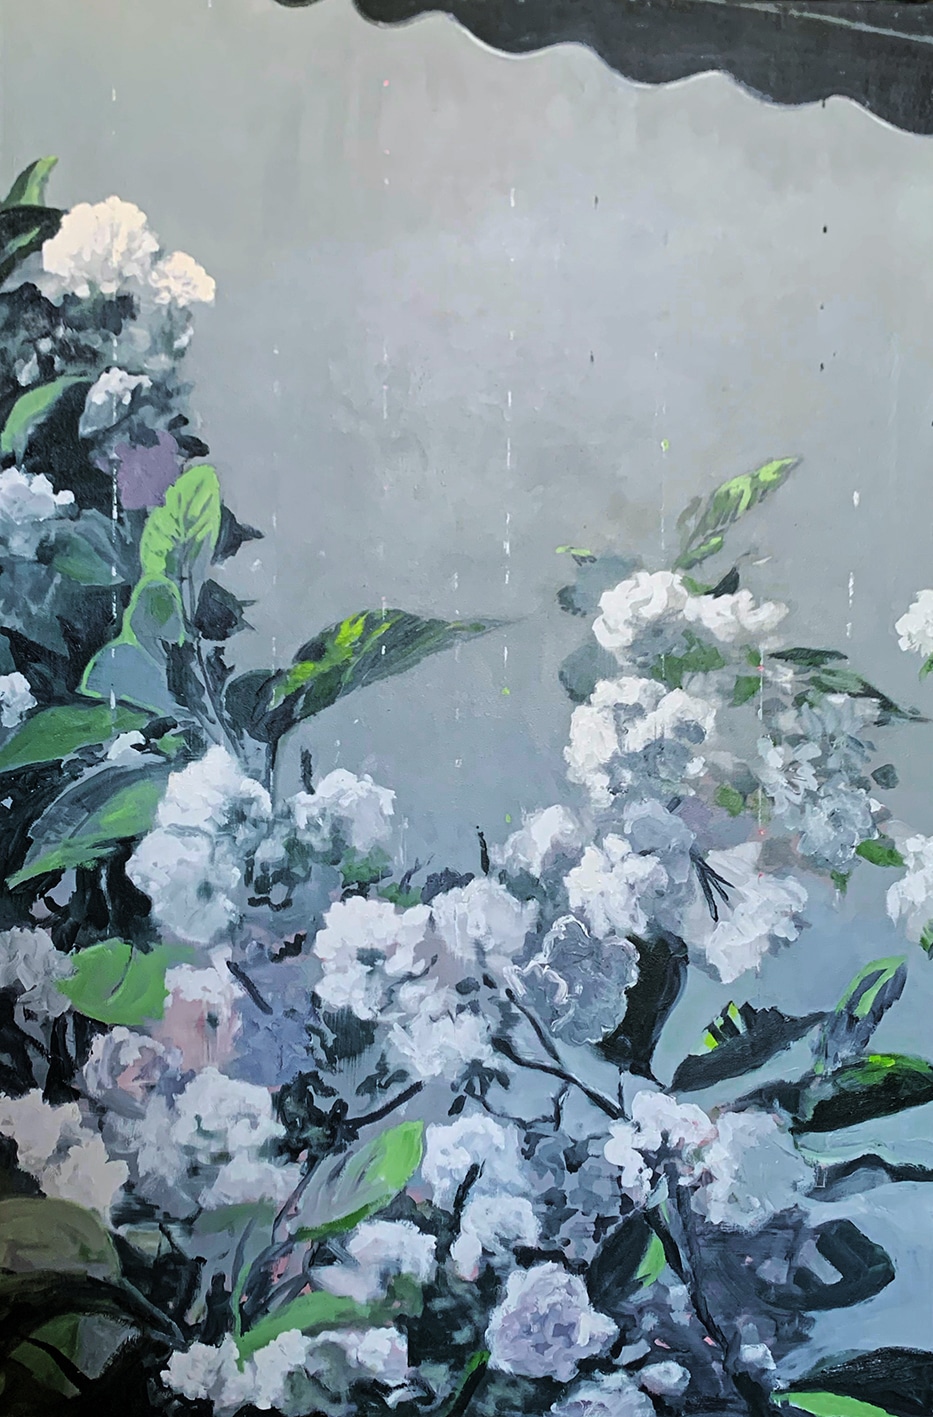 Joakim Allgulander - Cherry blossom köpa konst oljemålning.